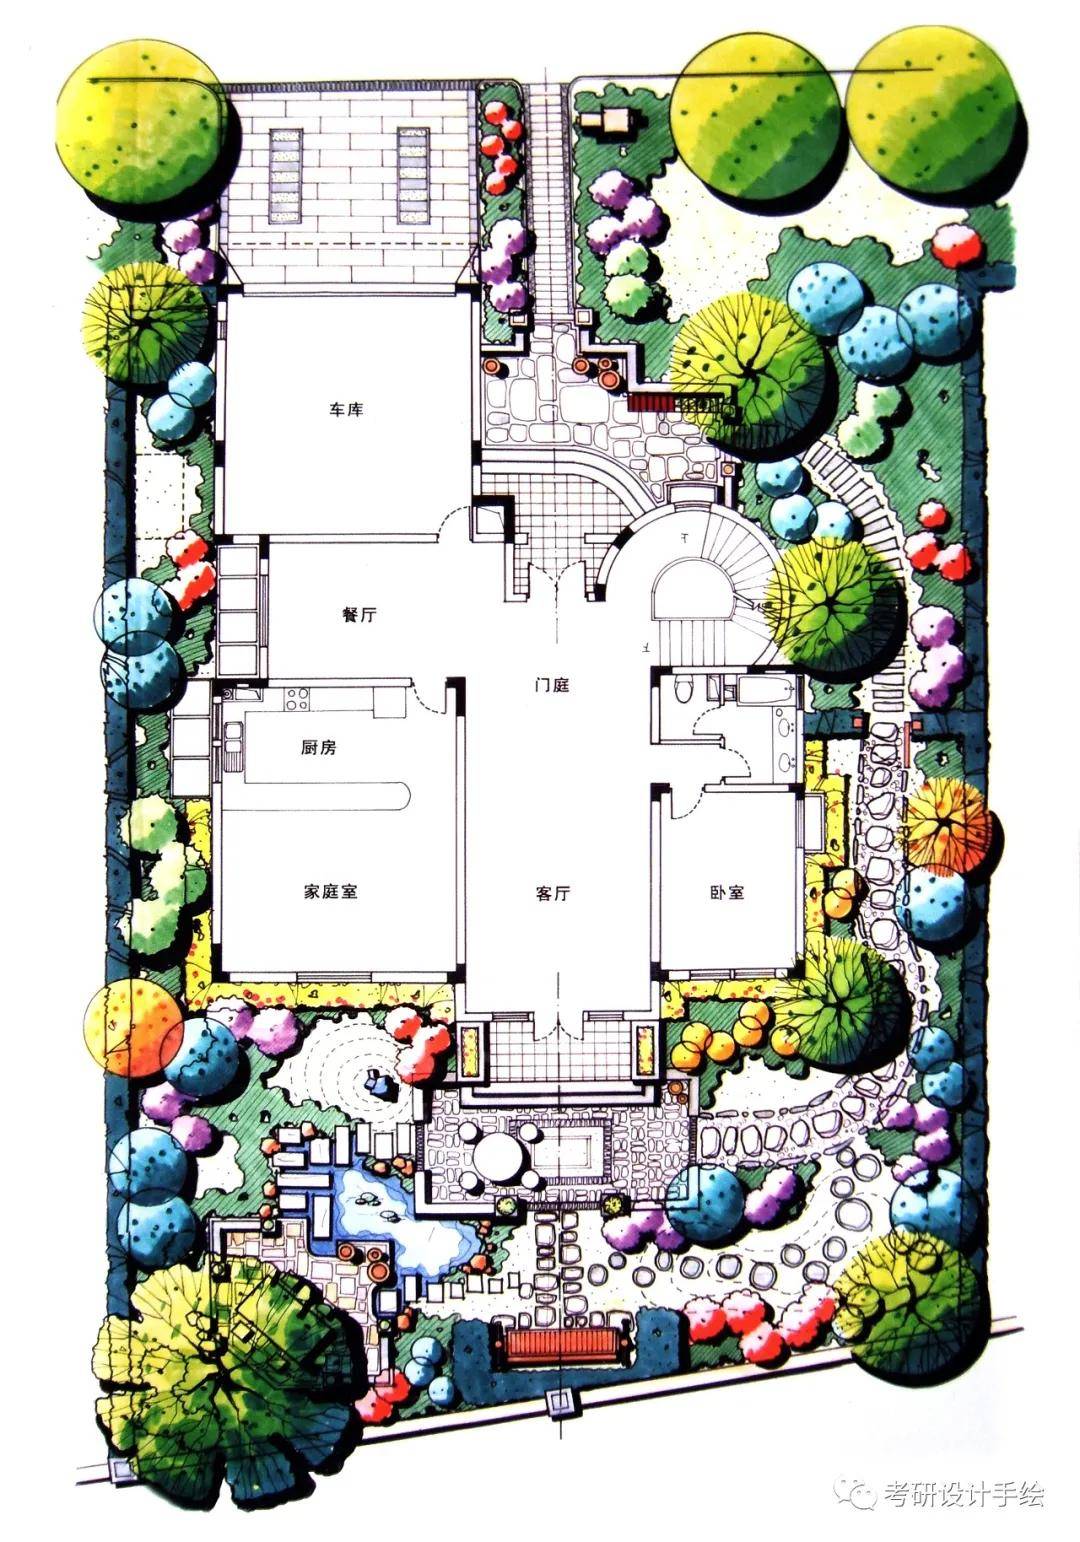 来看看设计师是怎样规划院子的吧~ 别墅庭院手绘方案01